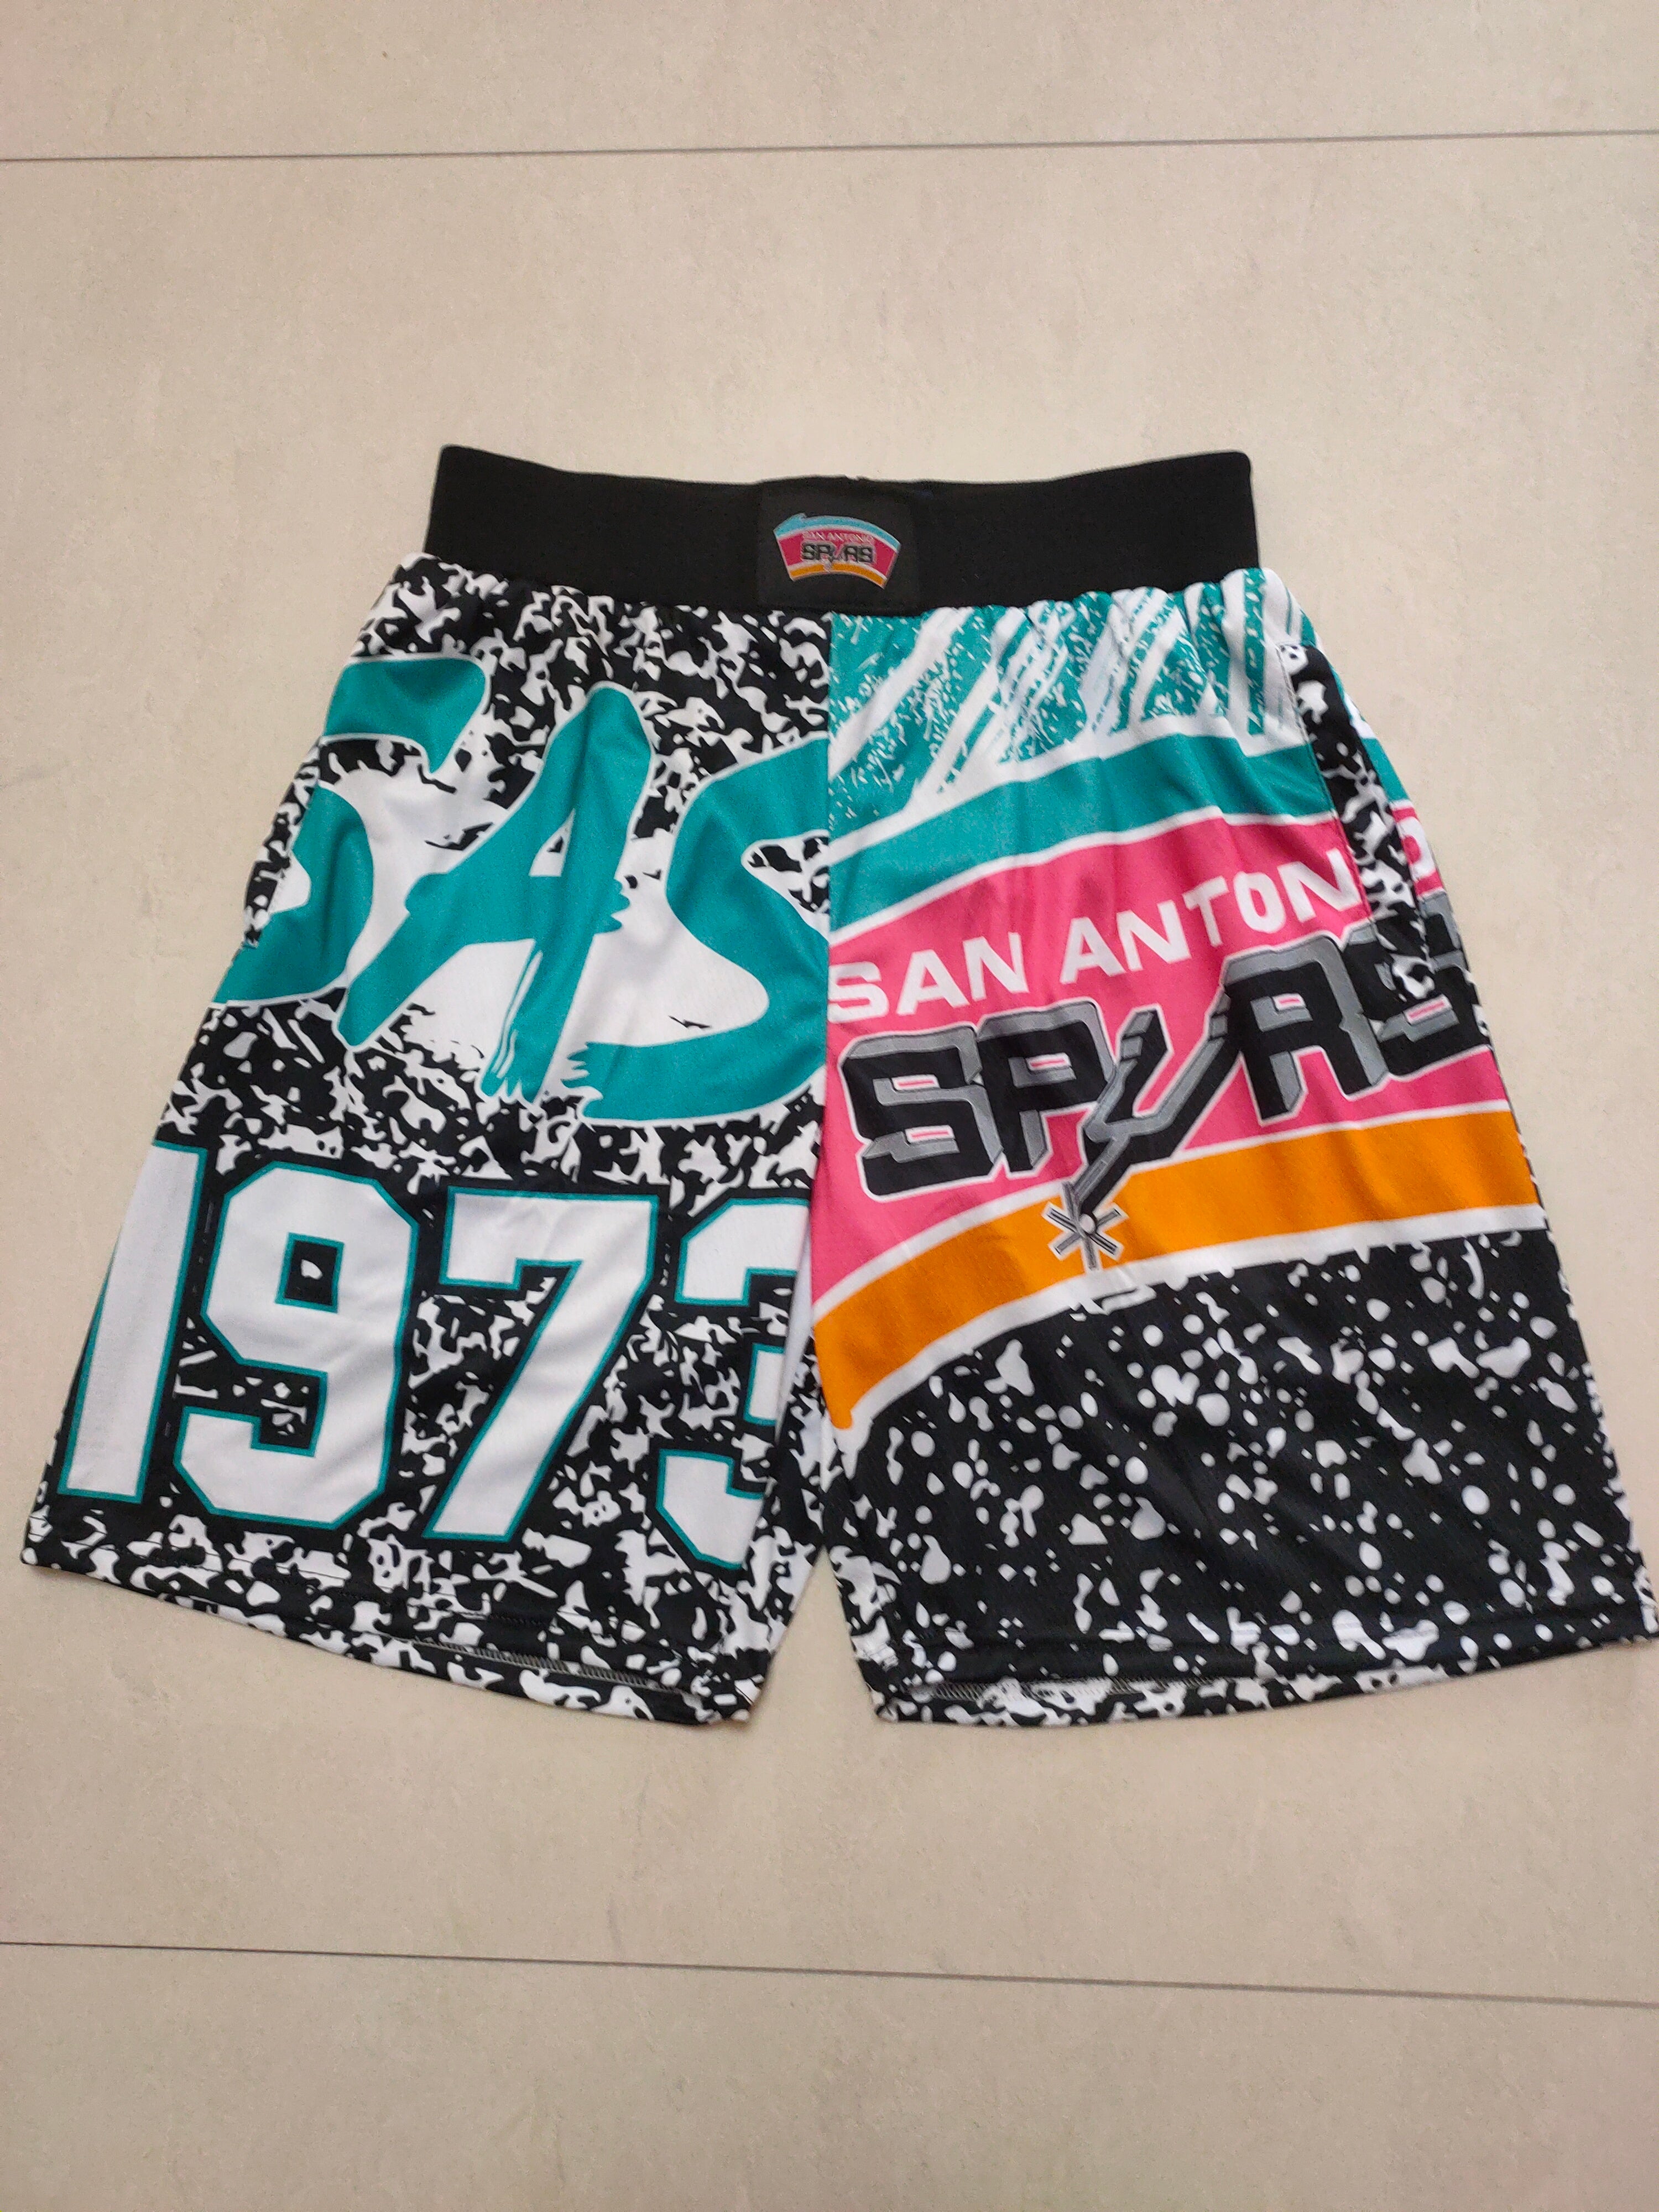 Spurs 1973 shorts